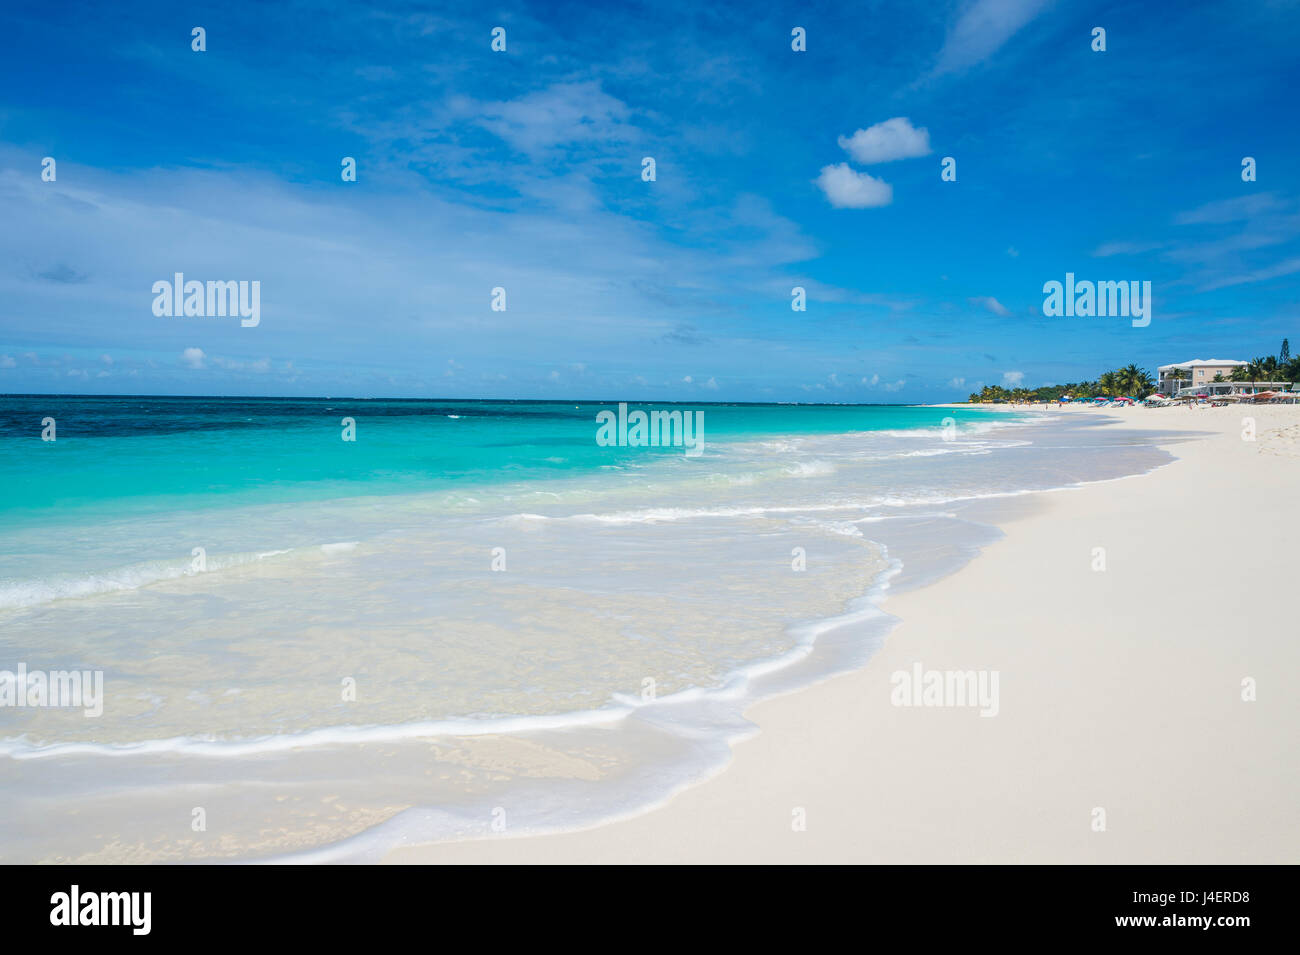 Le acque turchesi e bianchi sulla sabbia del world class Shoal Bay East Beach, Anguilla britannico territorio oltreoceano, dei Caraibi Foto Stock